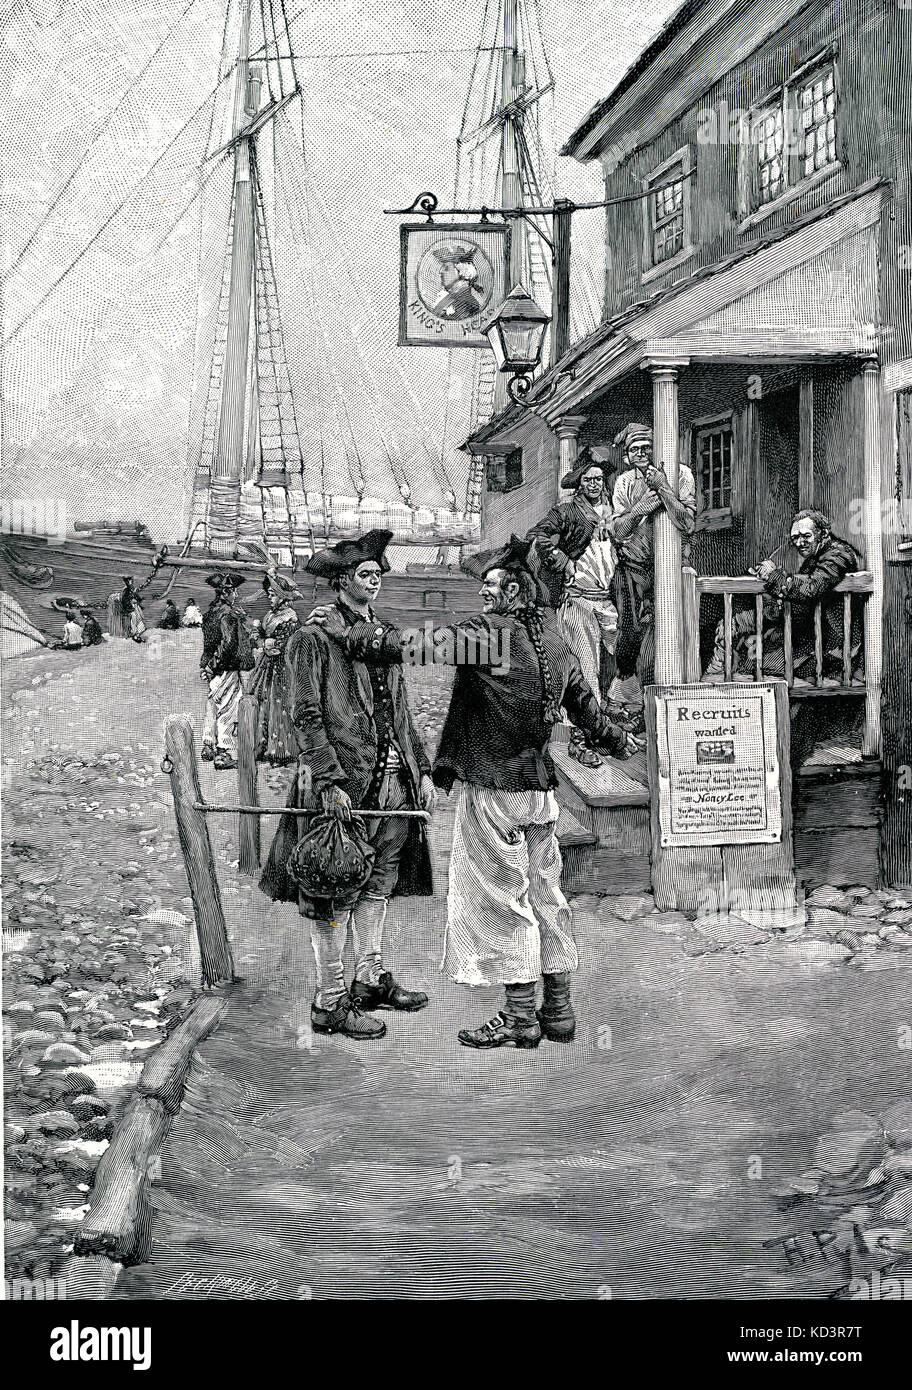 King's Head Tavern, Brownejohn's Wharf, Nueva York, se estableció como una estación de reclutamiento para el ejército británico durante la Revolución Americana, 1765 - 1783. Ilustración de Howard Pyle, 1908 Foto de stock